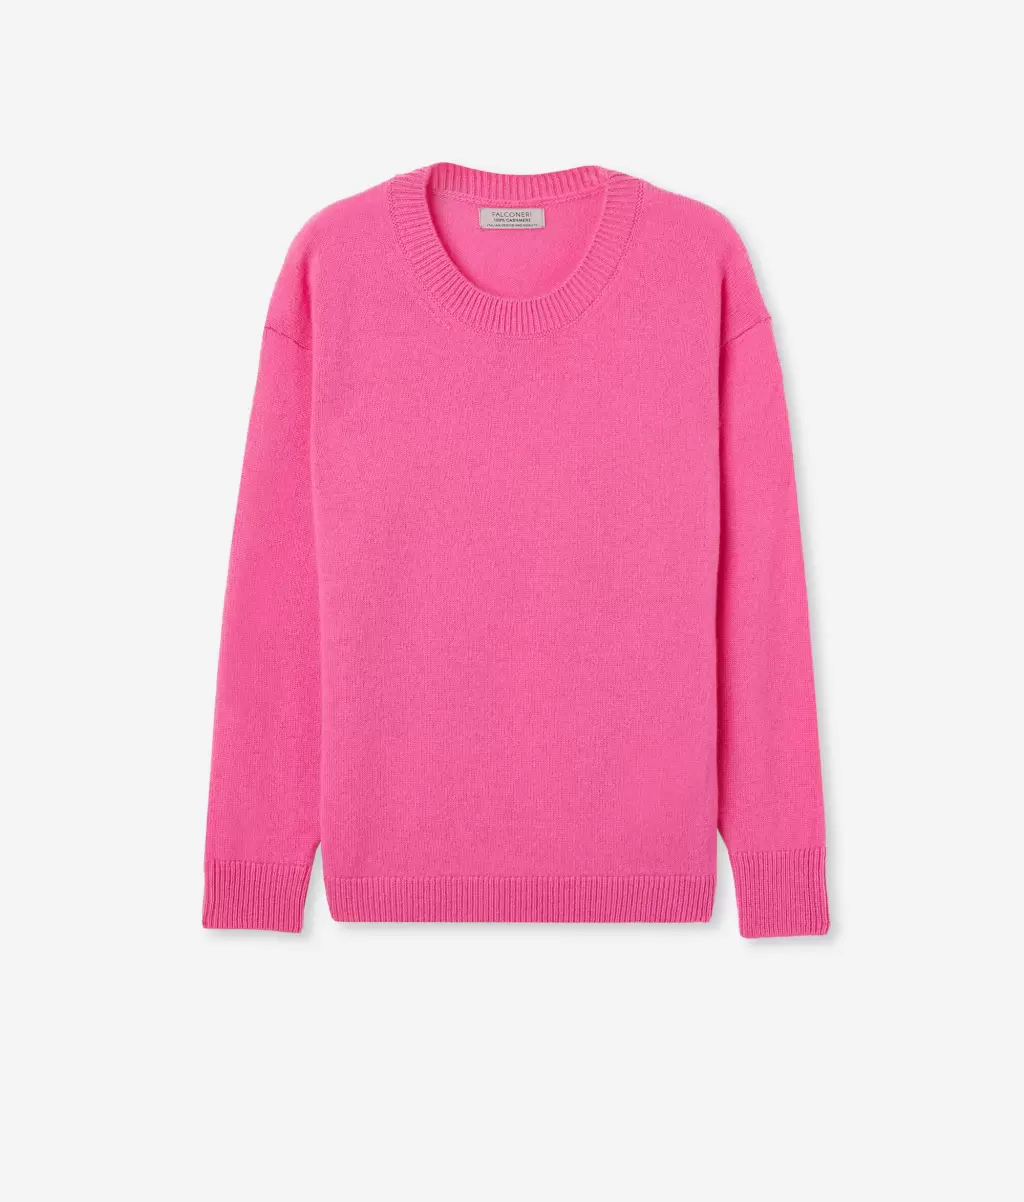 Pink Swetry Z Okrągłym Dekoltem Sweter Z Okrągłym Dekoltem Z Kaszmiru Ultrasoft Falconeri Kobieta - 4